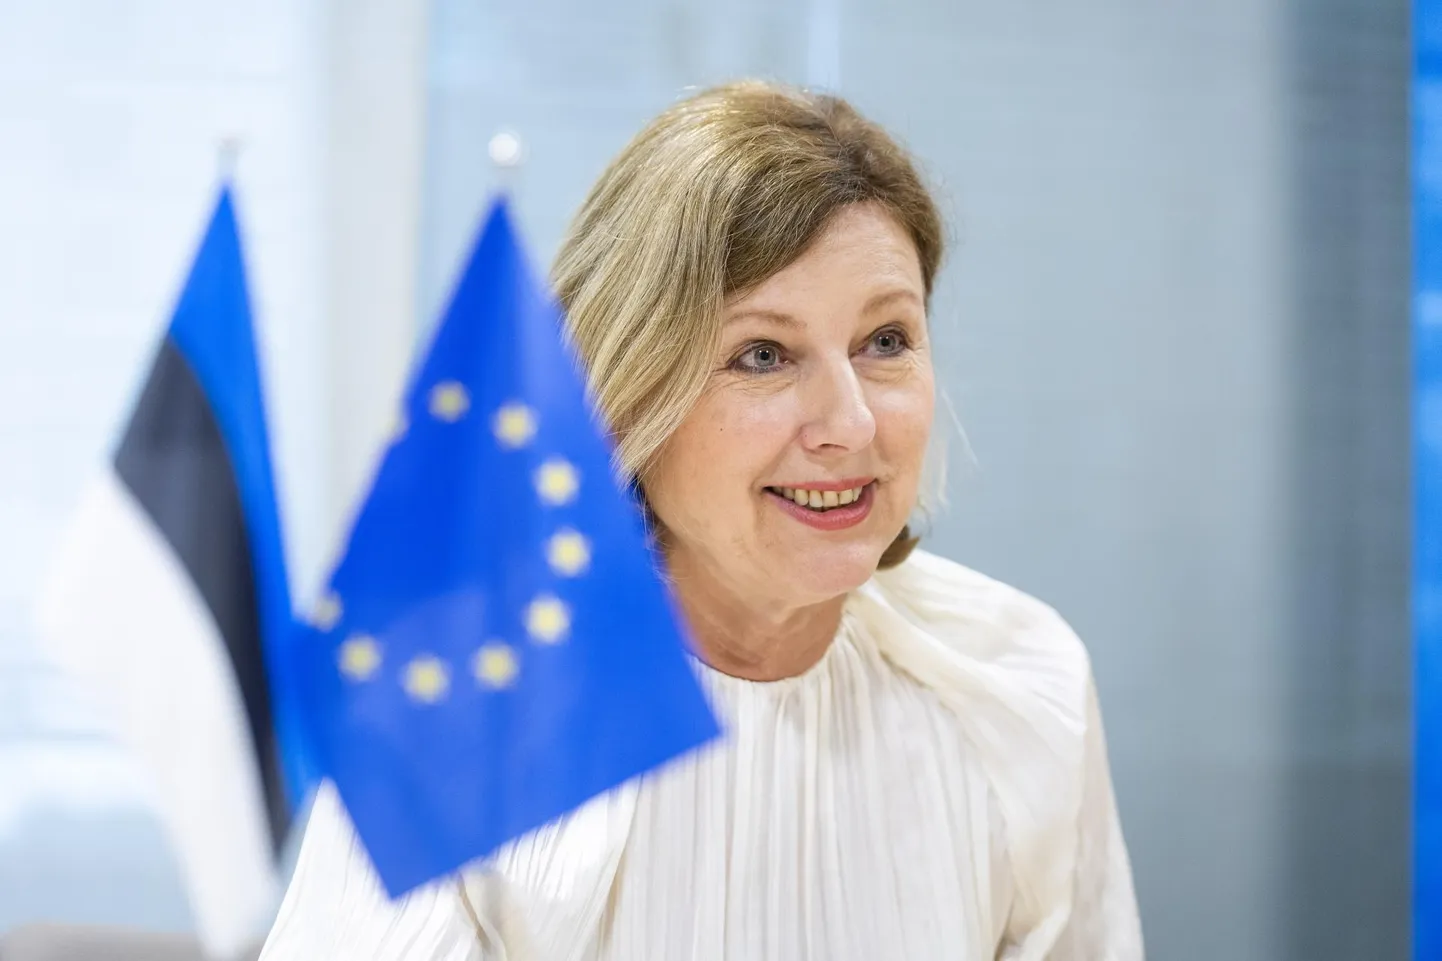 Euroopa Komisjoni asepresident Věra Jourová on veendunud, et Vene propaganda ei mõjuta Euroopa valijaid nii palju, et see võiks kuidagi ohtu seada selge toetuse Ukrainale.